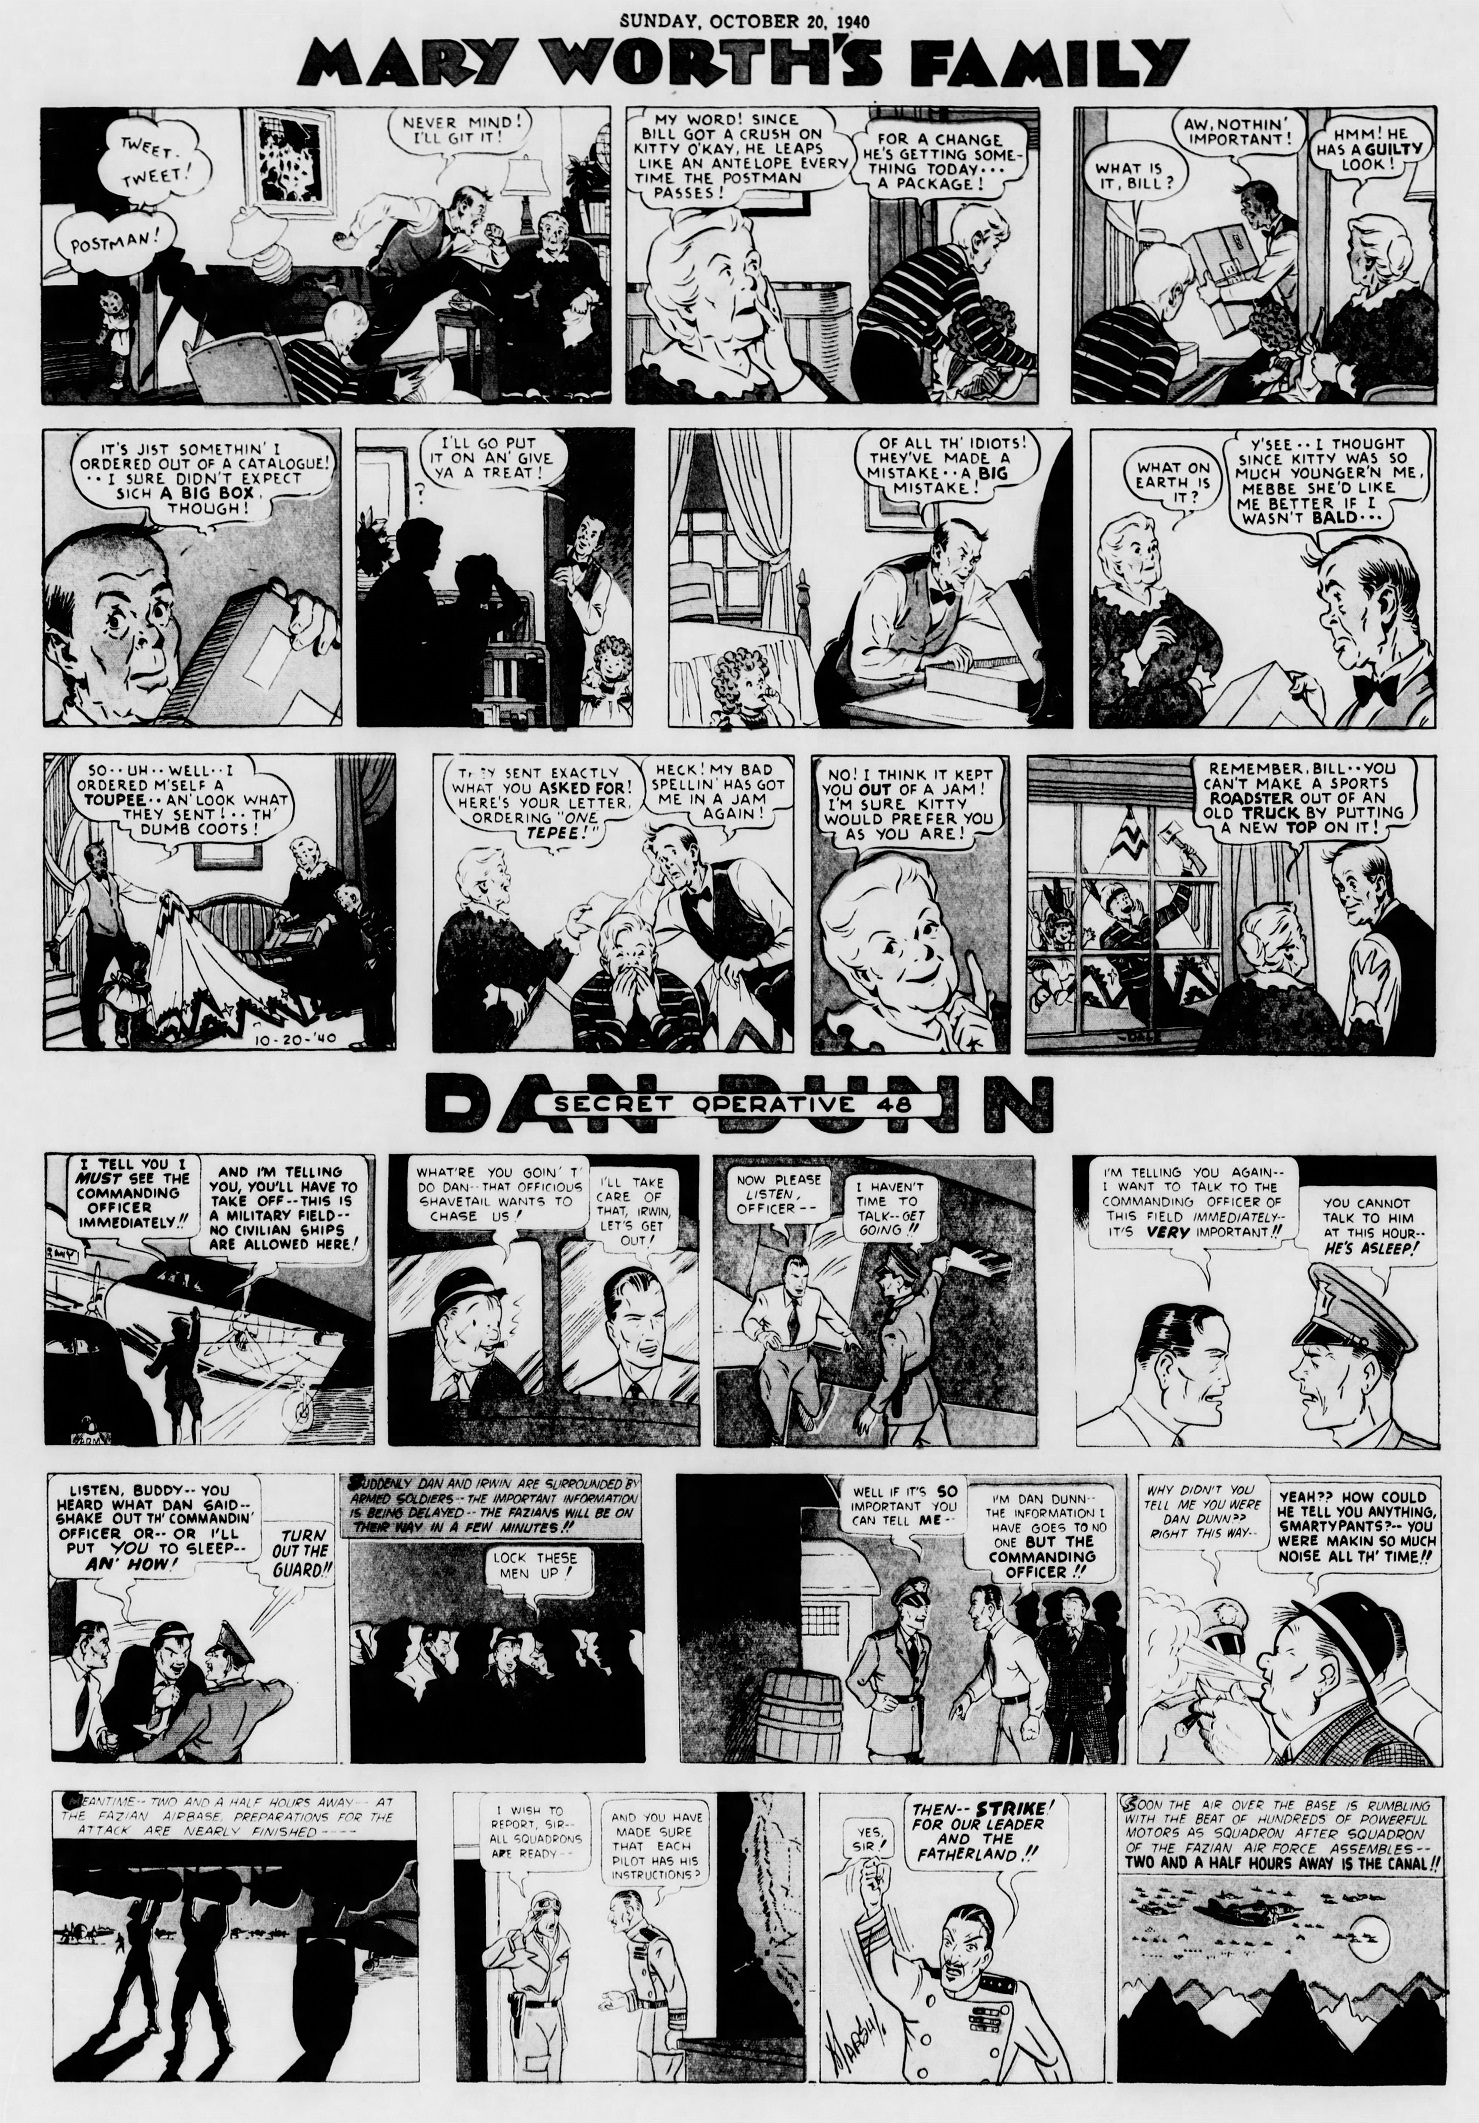 The_Brooklyn_Daily_Eagle_Sun__Oct_20__1940_(8).jpg